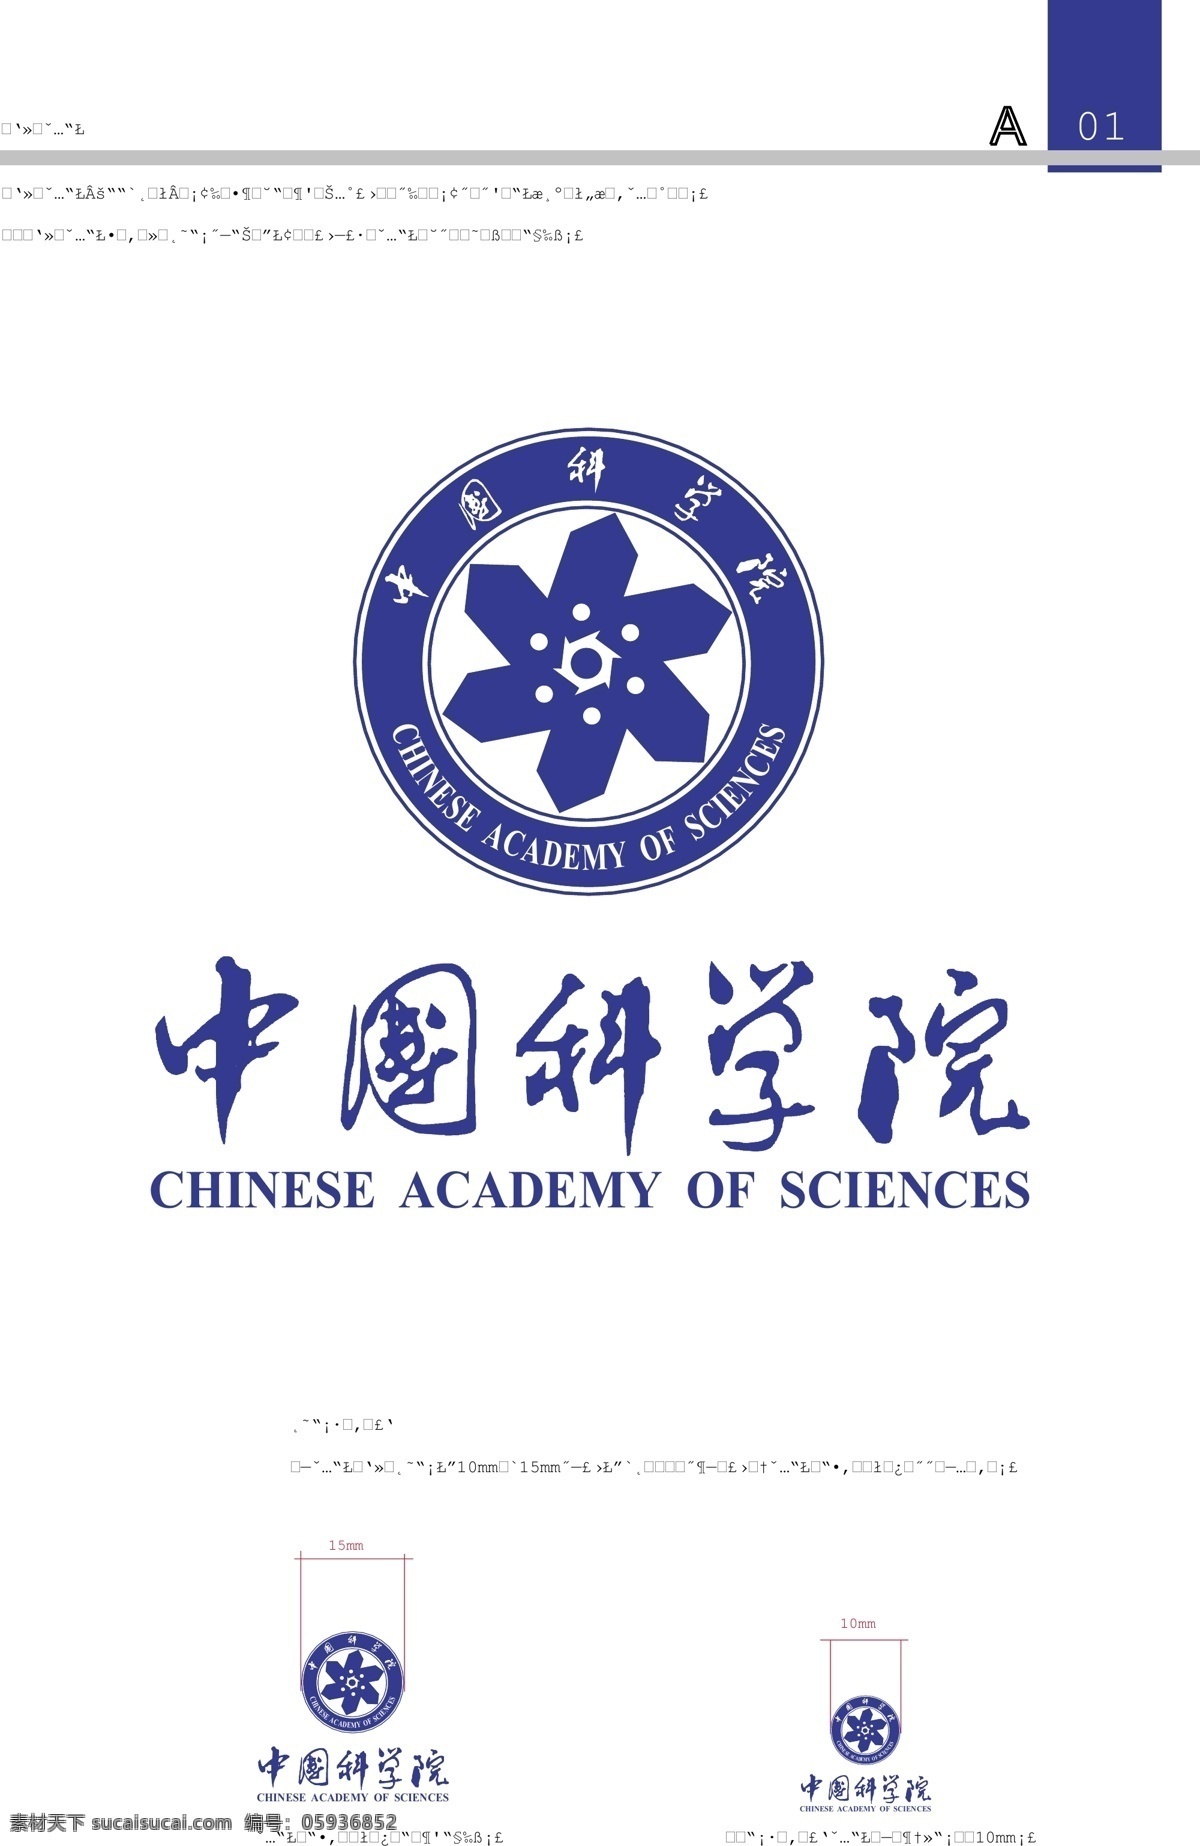 中科院 logo 中国科学院 cas 标识标志图标 公共标识标志 矢量图库